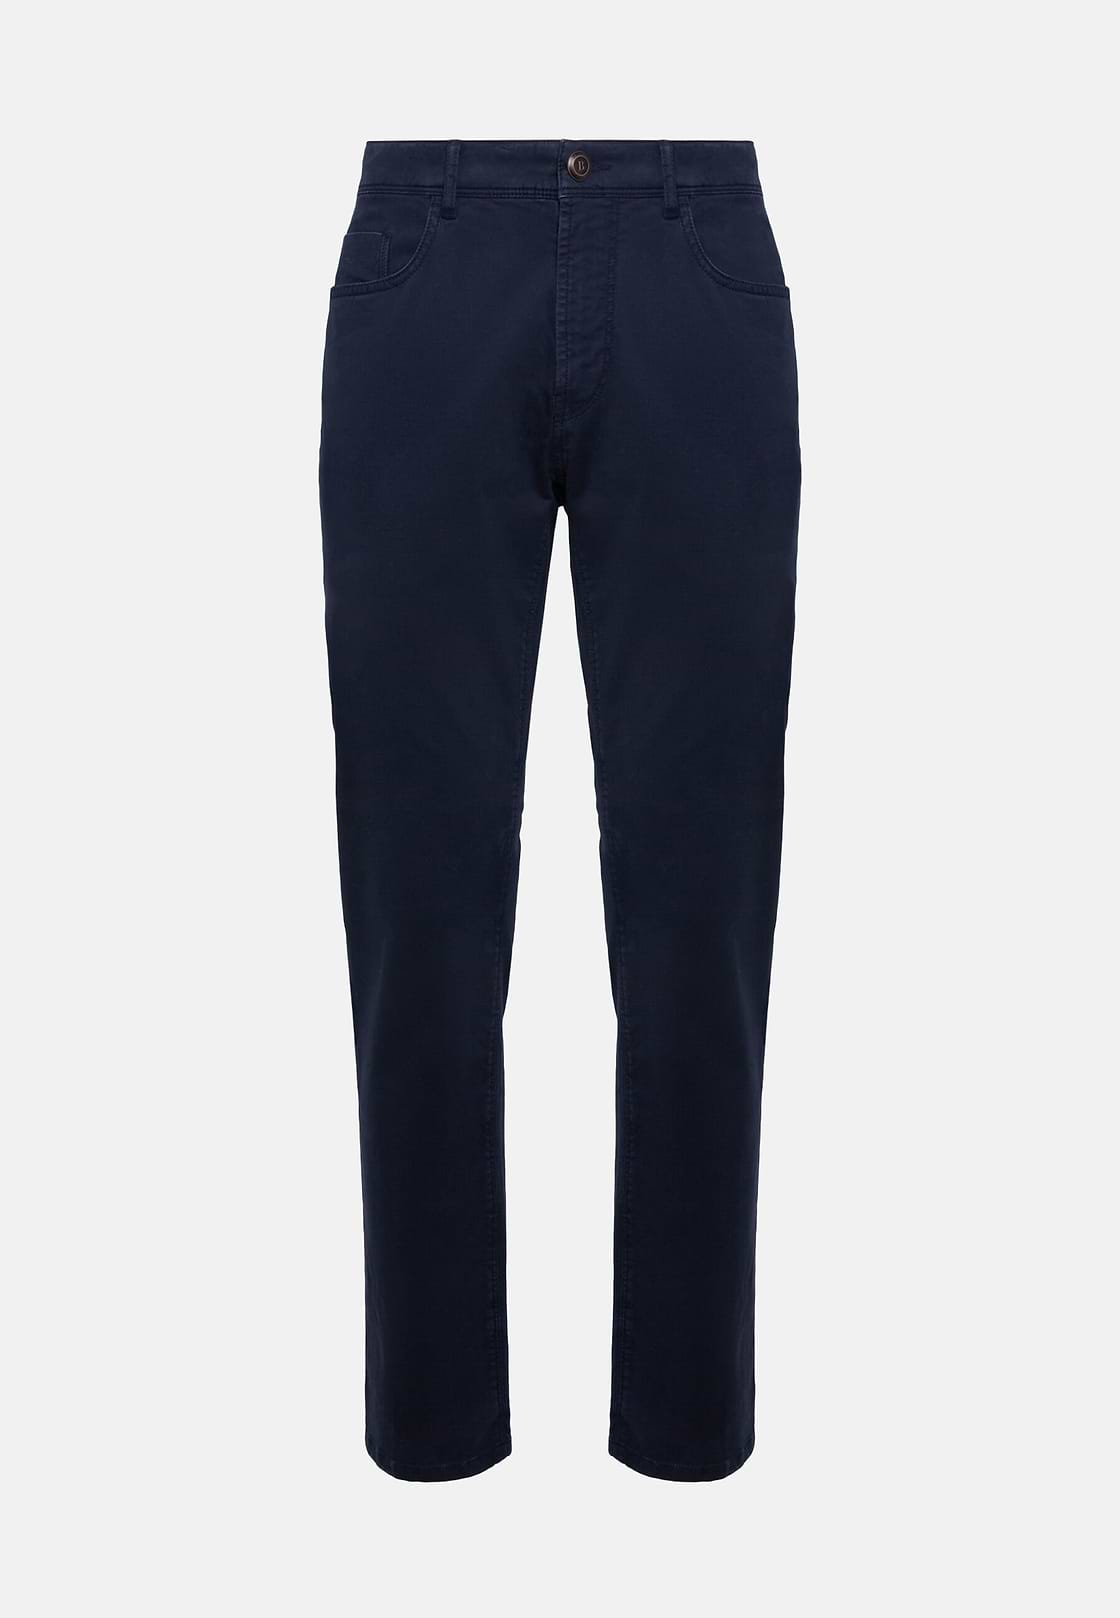 Stretch Cotton Jeans, Navy blue, hi-res